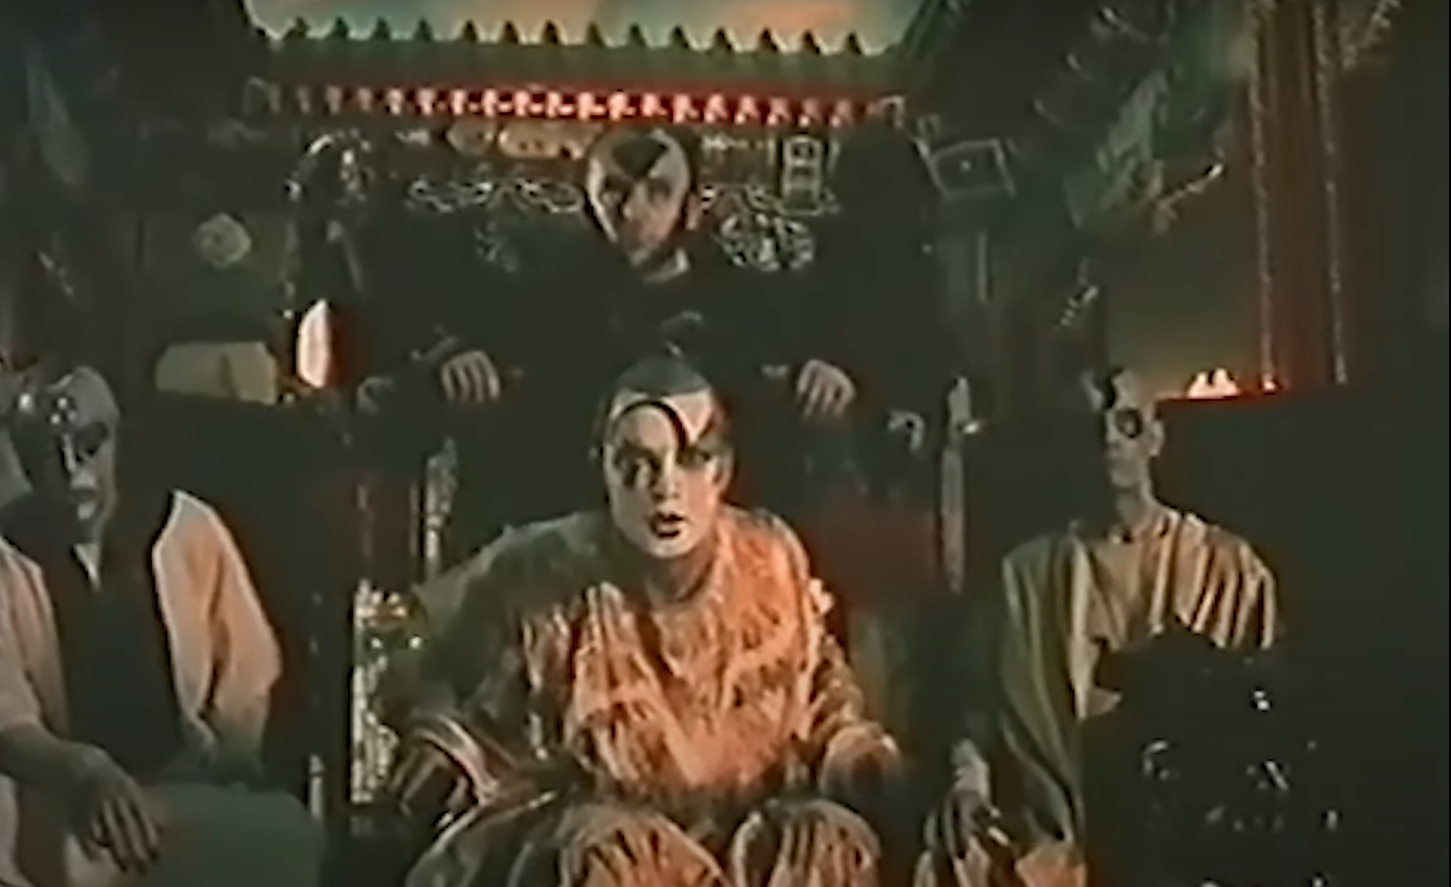 Кадр из документального фильма "Откровение Ивана Ефремова", 1990